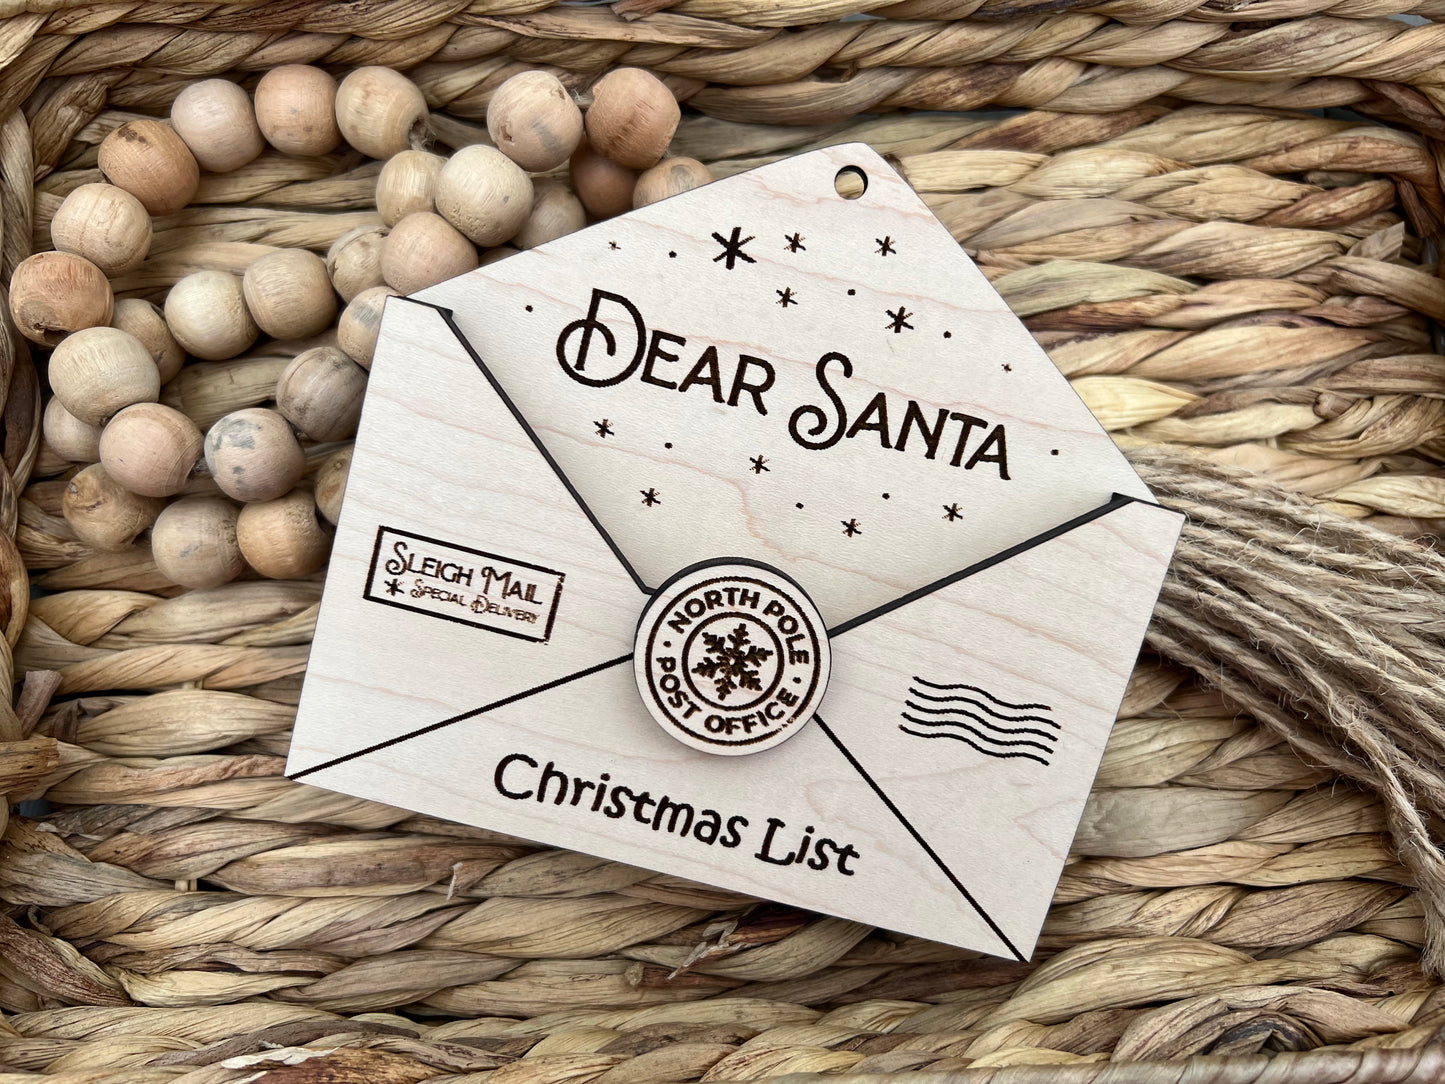 Dear Santa - Christmas List ornament